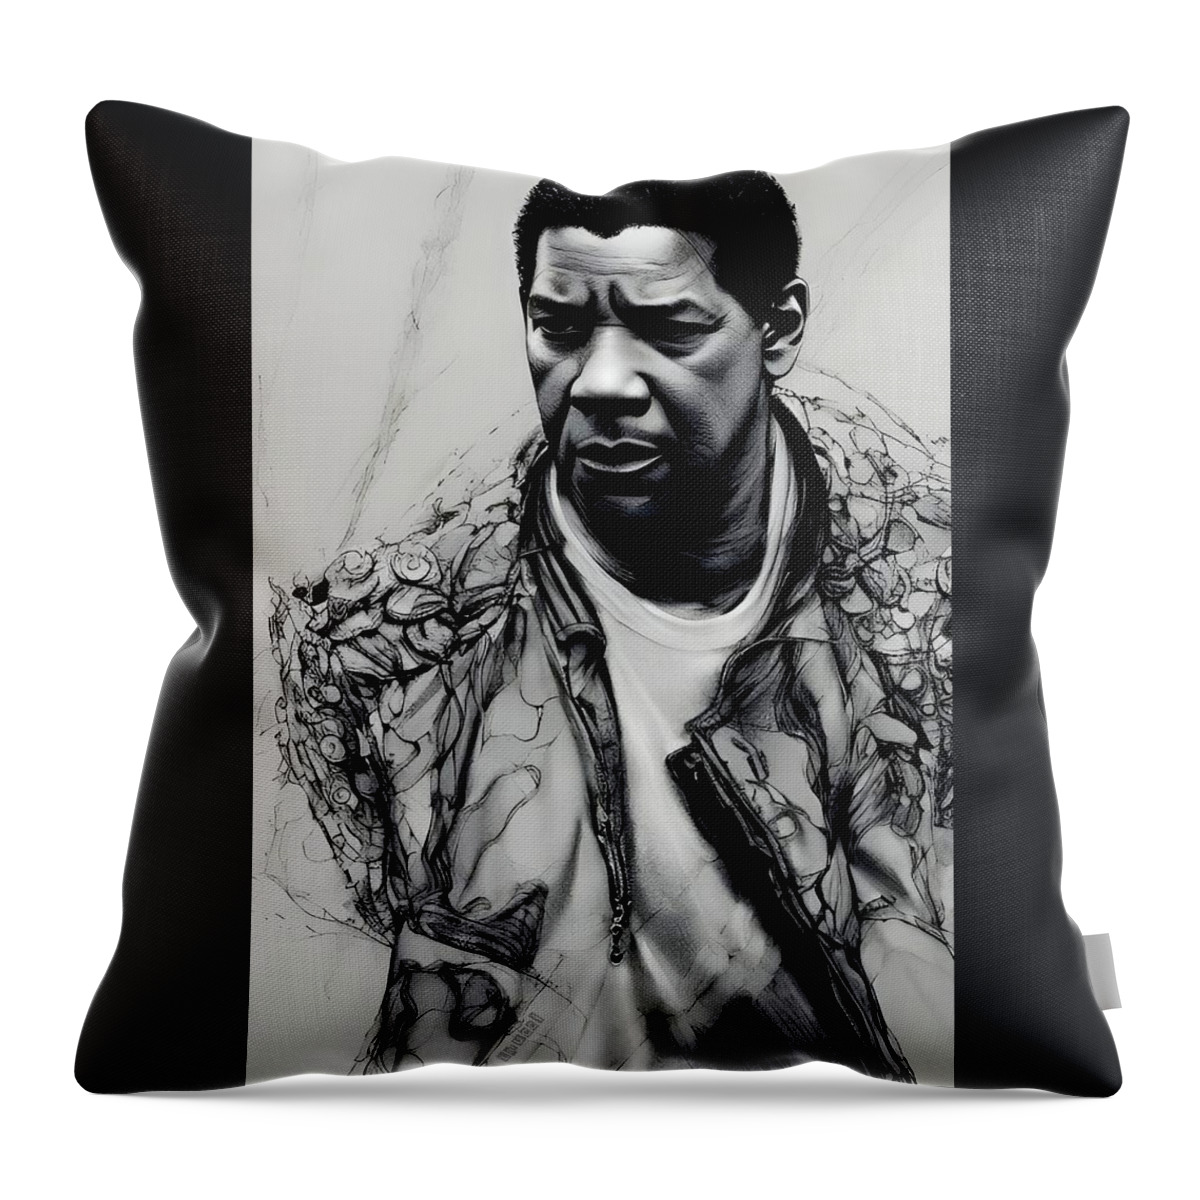 Denzel Washington Throw Pillow featuring the digital art Fallen - Denzel Washington by Fred Larucci